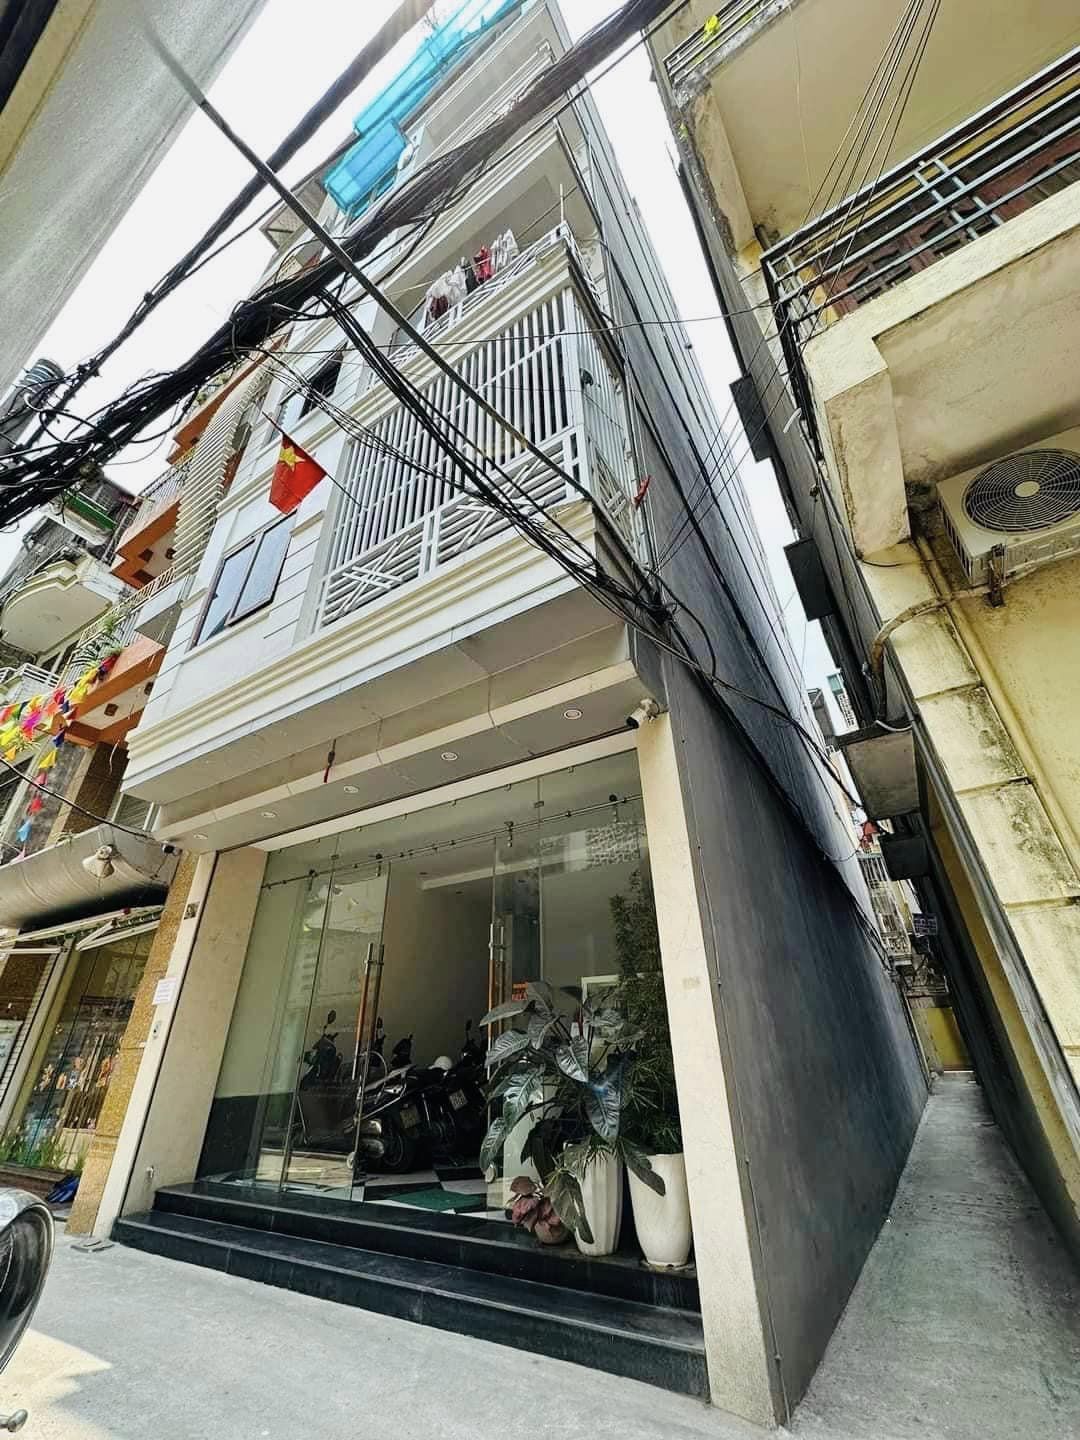 Bán nhà phố Tam Khương, Đống Đa, Hà Nội. Toà nhà hỗn hợp giữa căn hộ cho thuê và ở. Dòng tiền